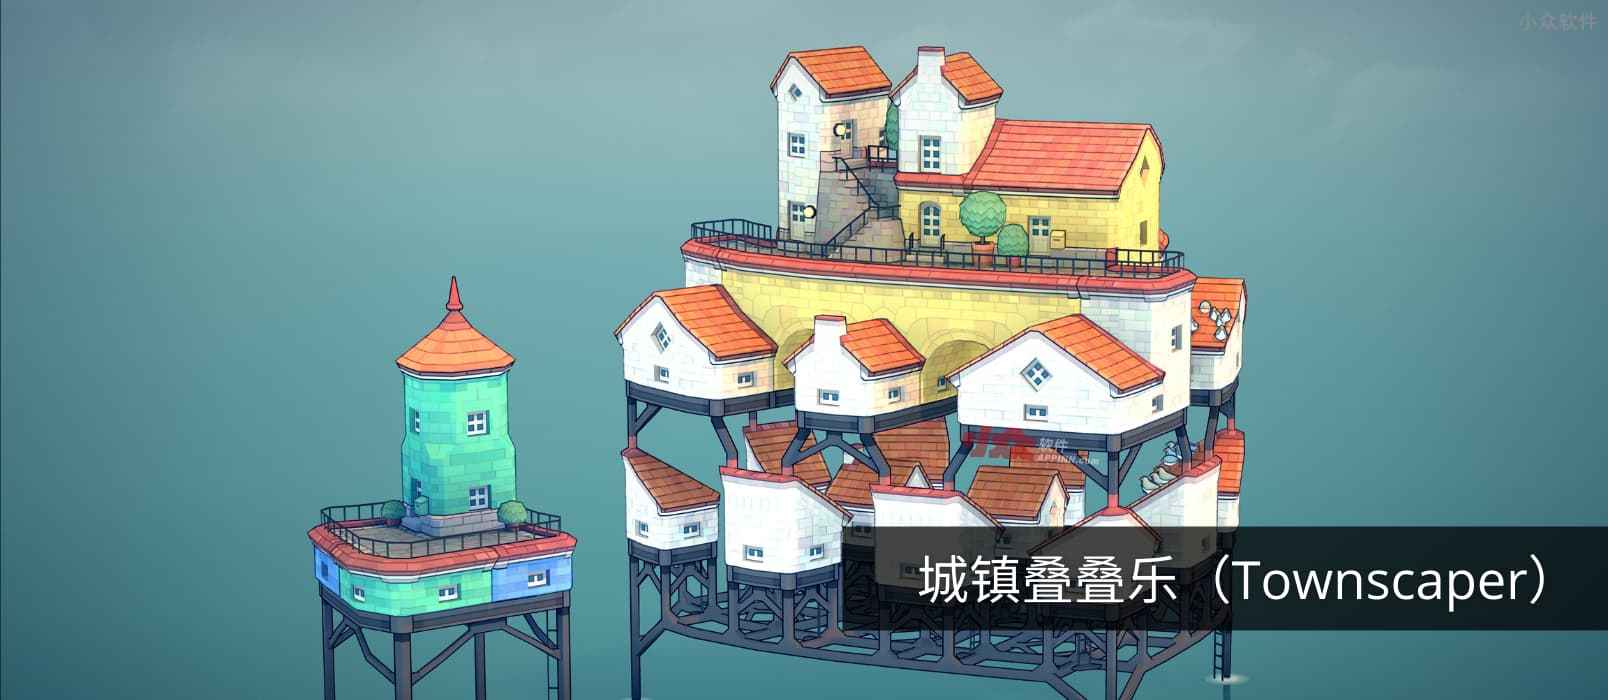 城镇叠叠乐 - 自由度极高的古城镇建造游戏